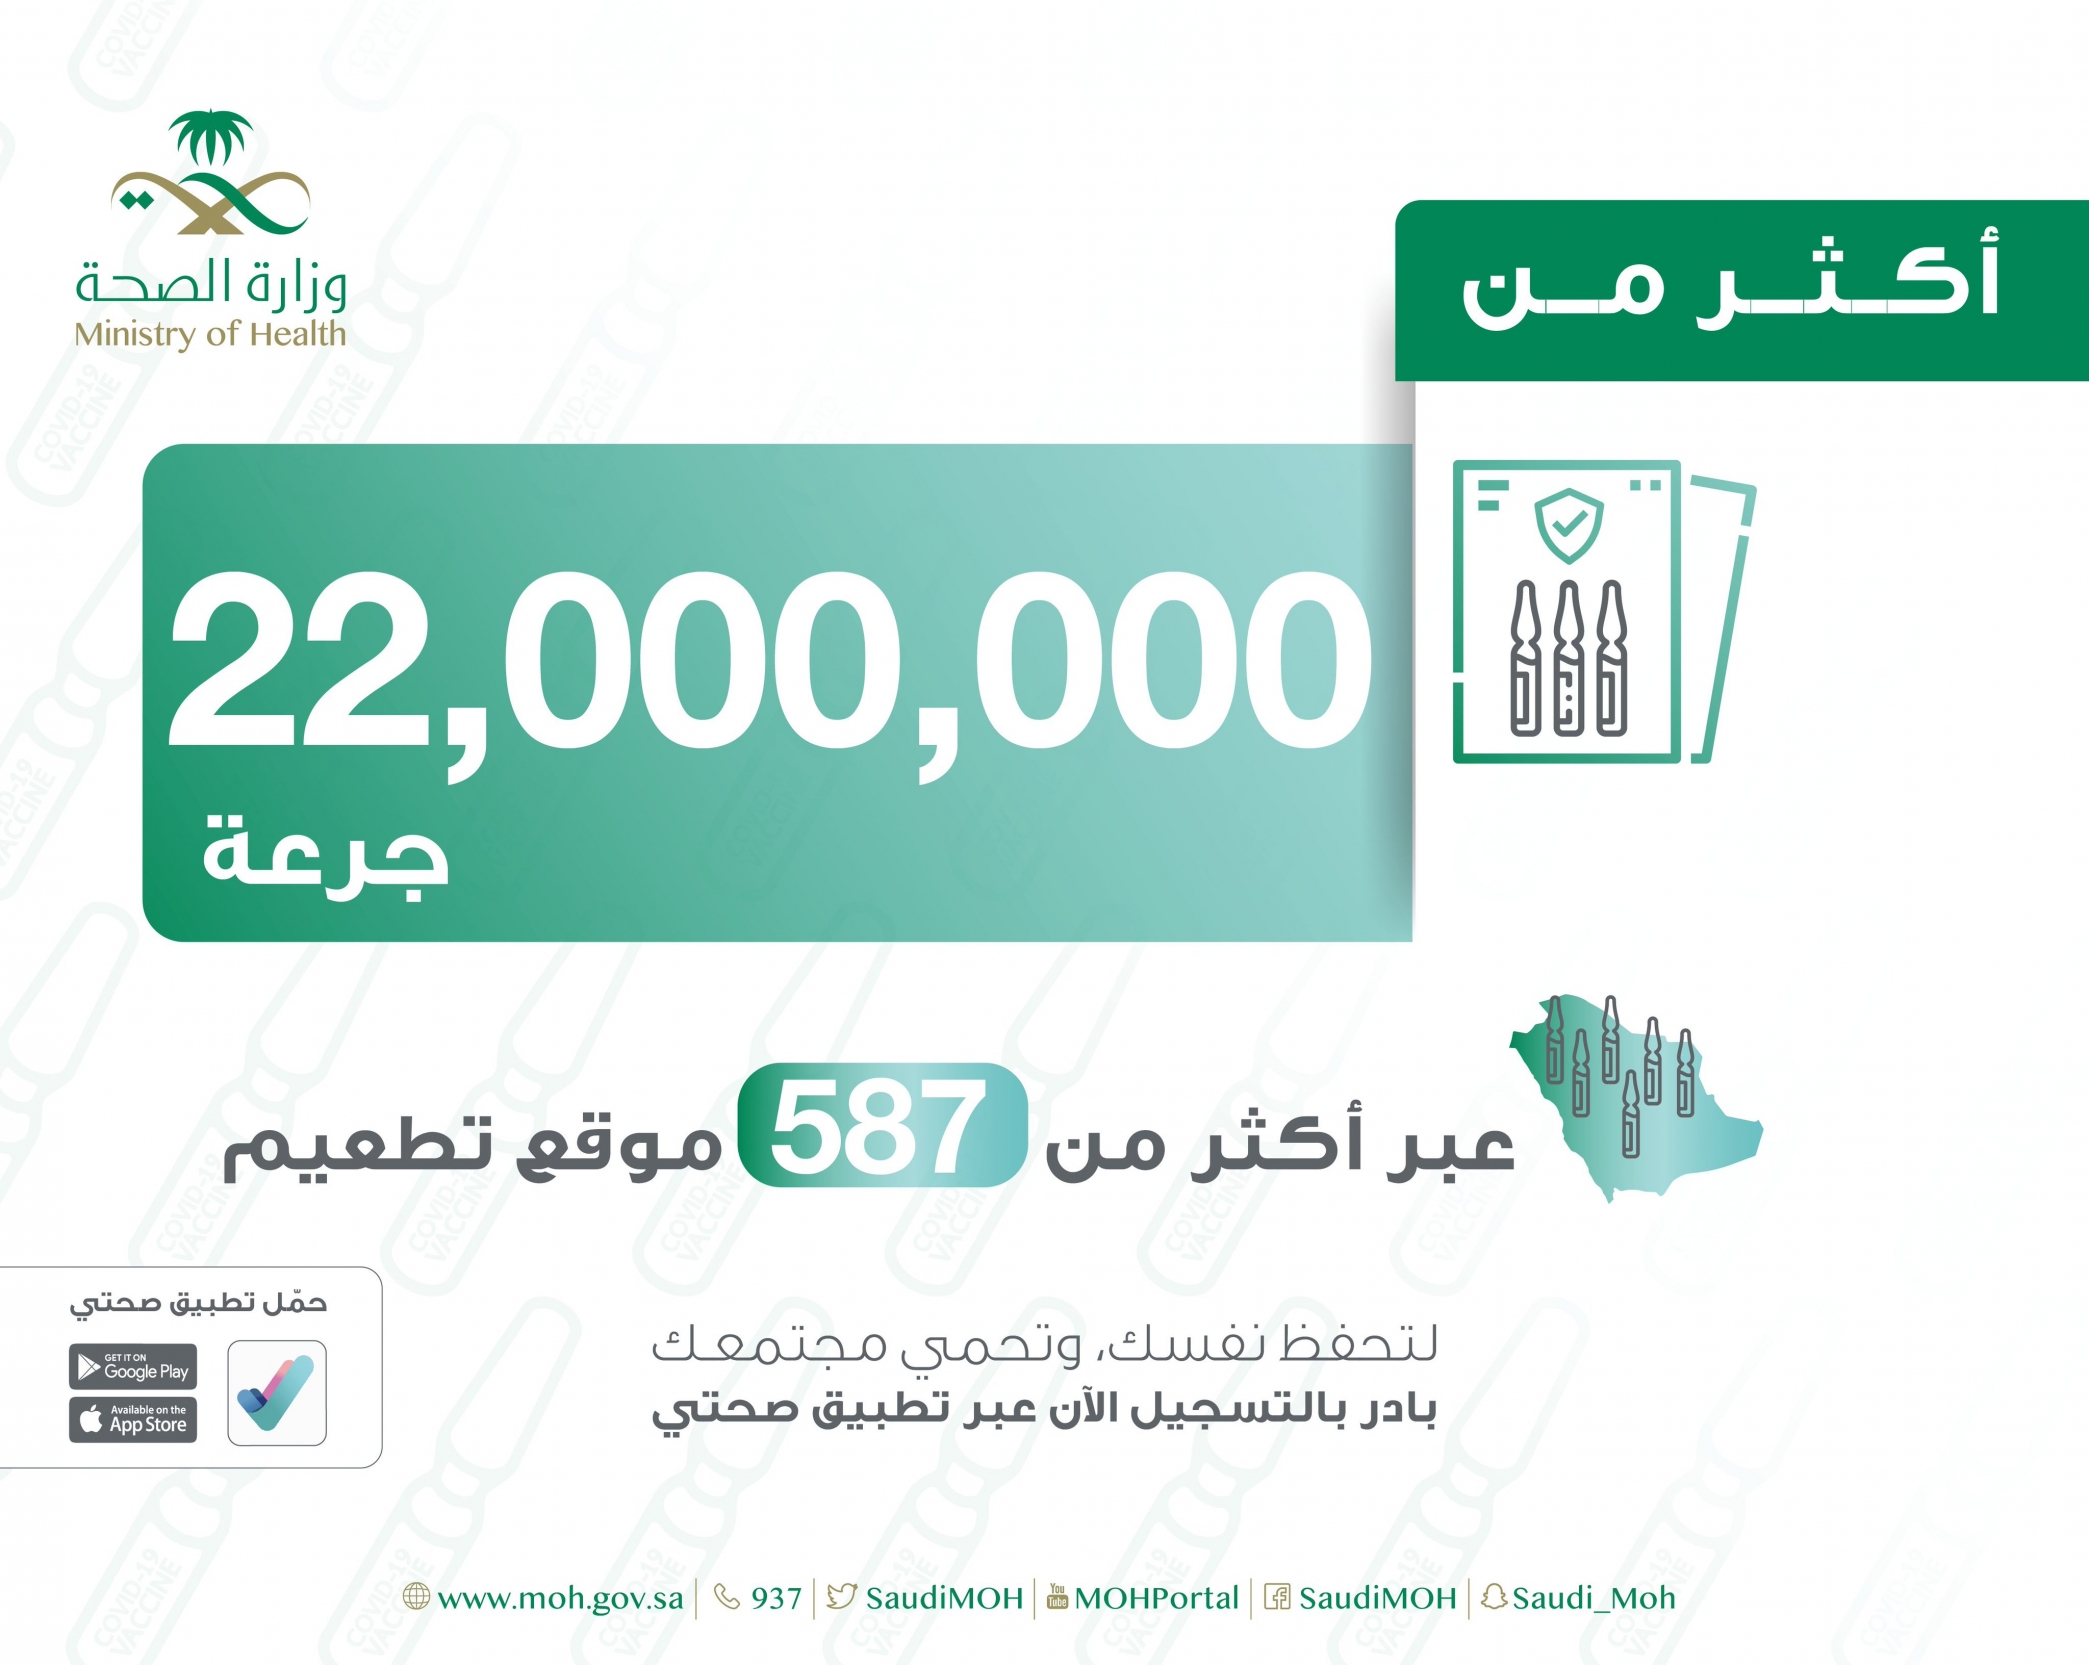 جرعات لقاح كورونا في السعودية تصل 22 مليون جرعة